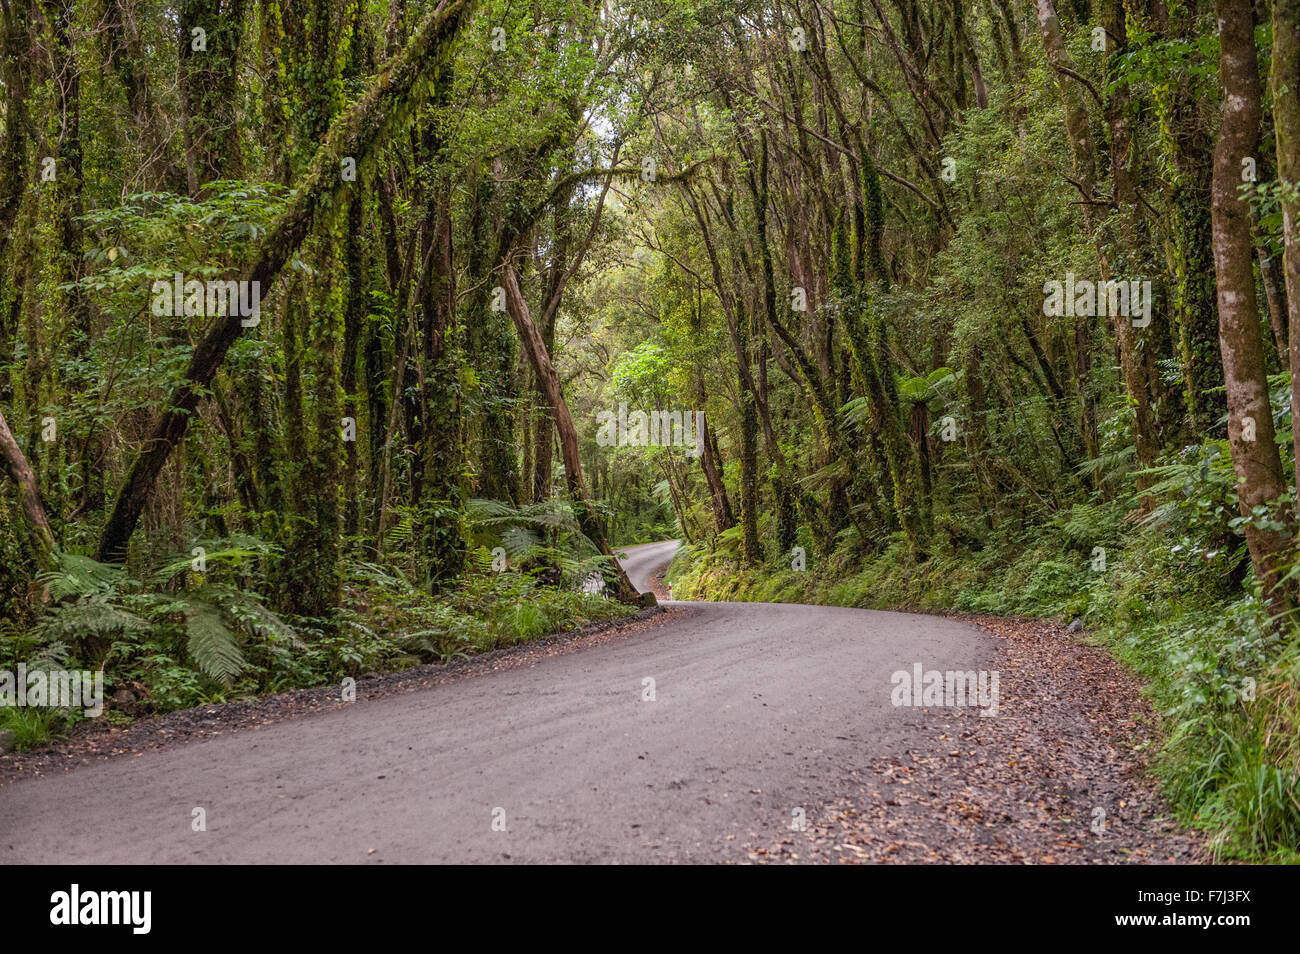 Route de gravier sinueuse à travers la forêt tropicale dans la région de Glacier Country, West Coast, South Island, New Zealand Banque D'Images